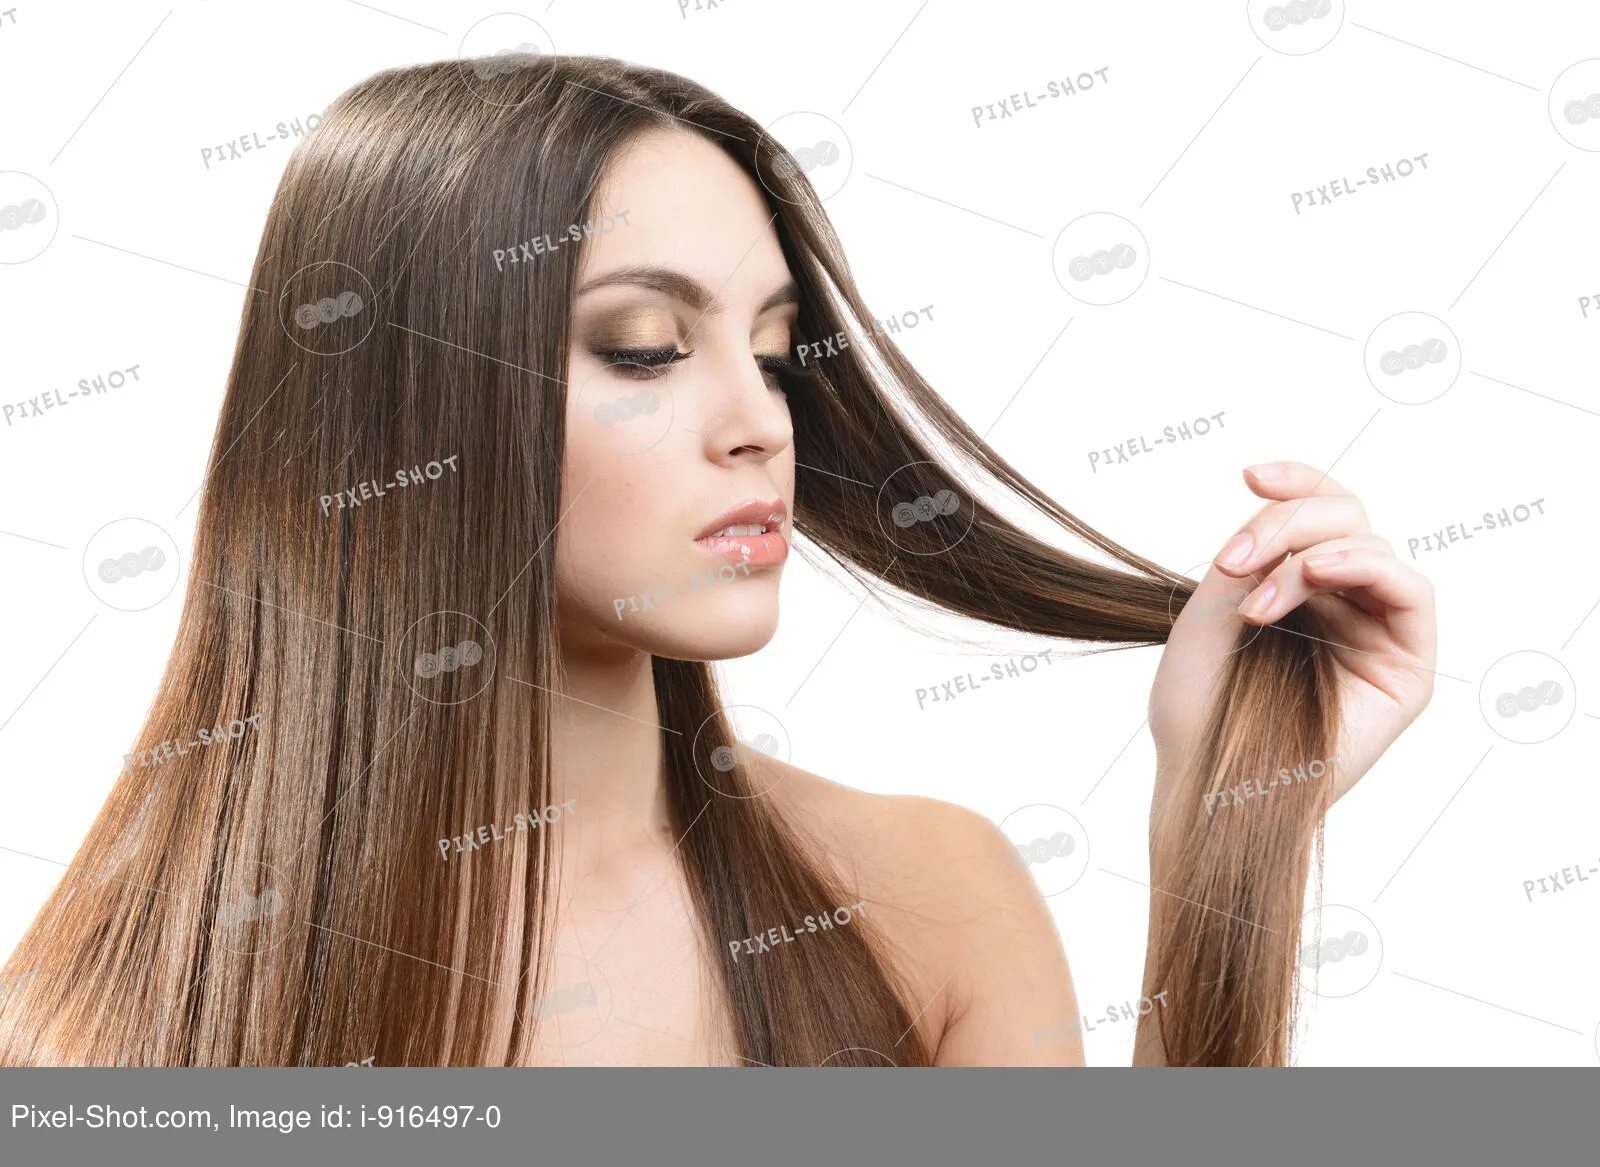 Для каждого типа волос. Жирный Тип волос. Тонкий Тип волос. Славянский Тип волос тонкий. Жирный Тип волос вертикально.